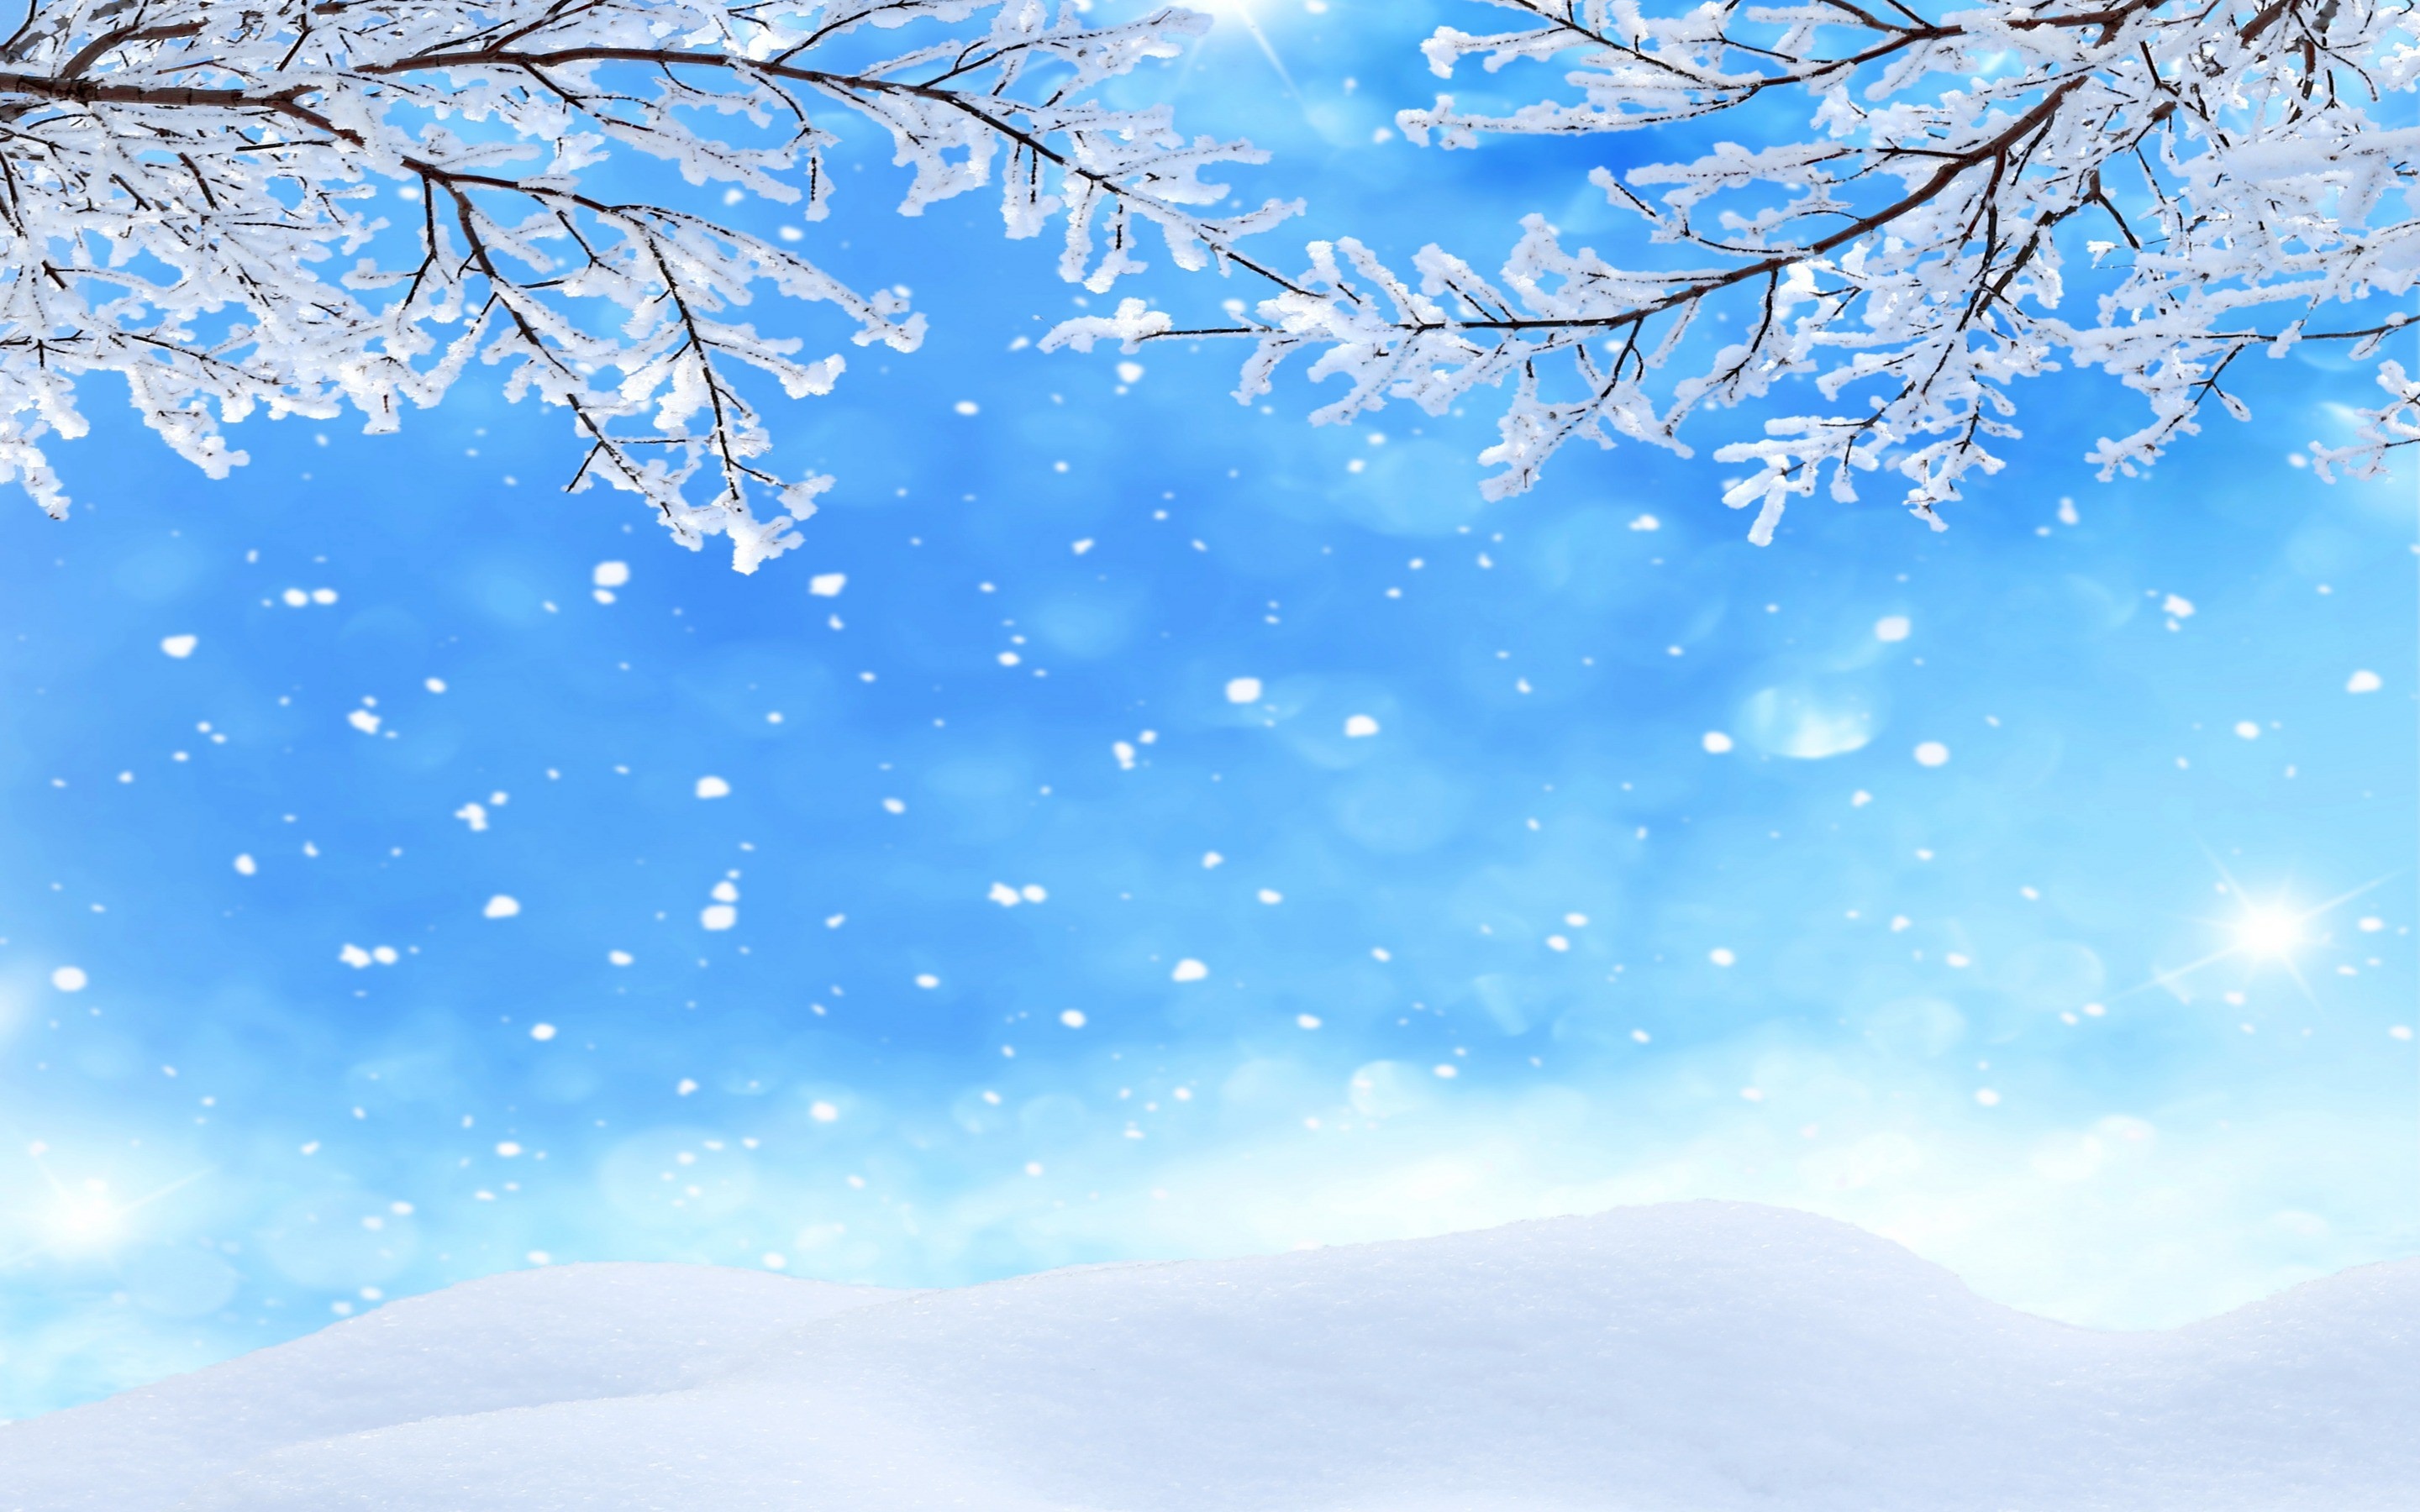 雪花壁纸高清雪景图片